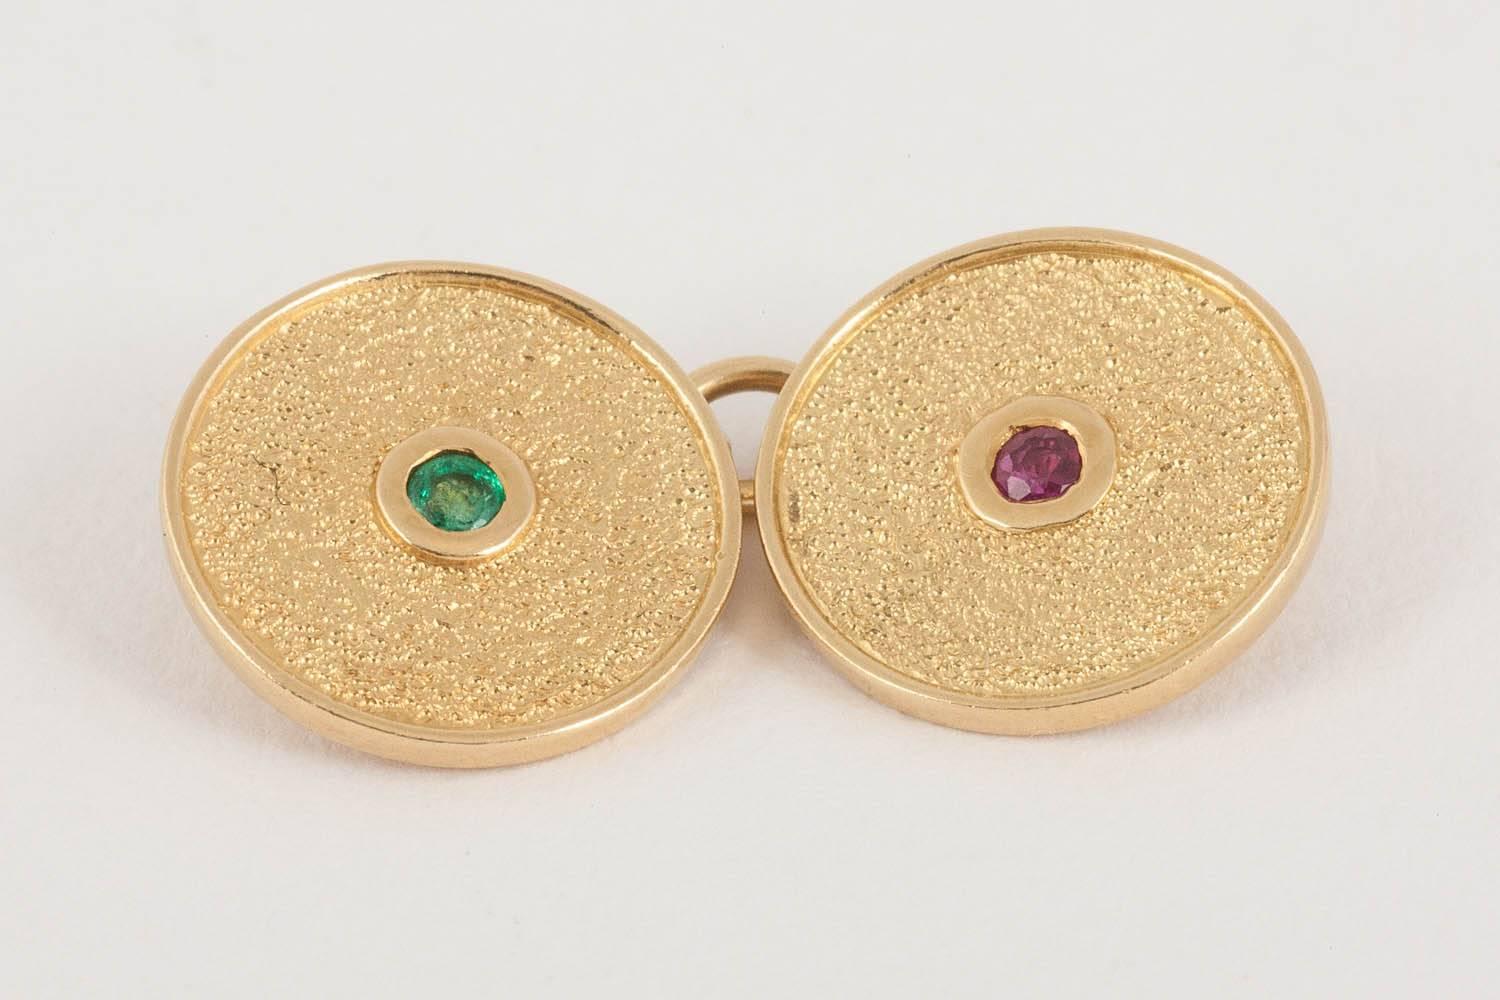 Edwardian Cufflinks, Cartier 18 Carat Gold, Emerald, Ruby, Textured Design Cartier Case